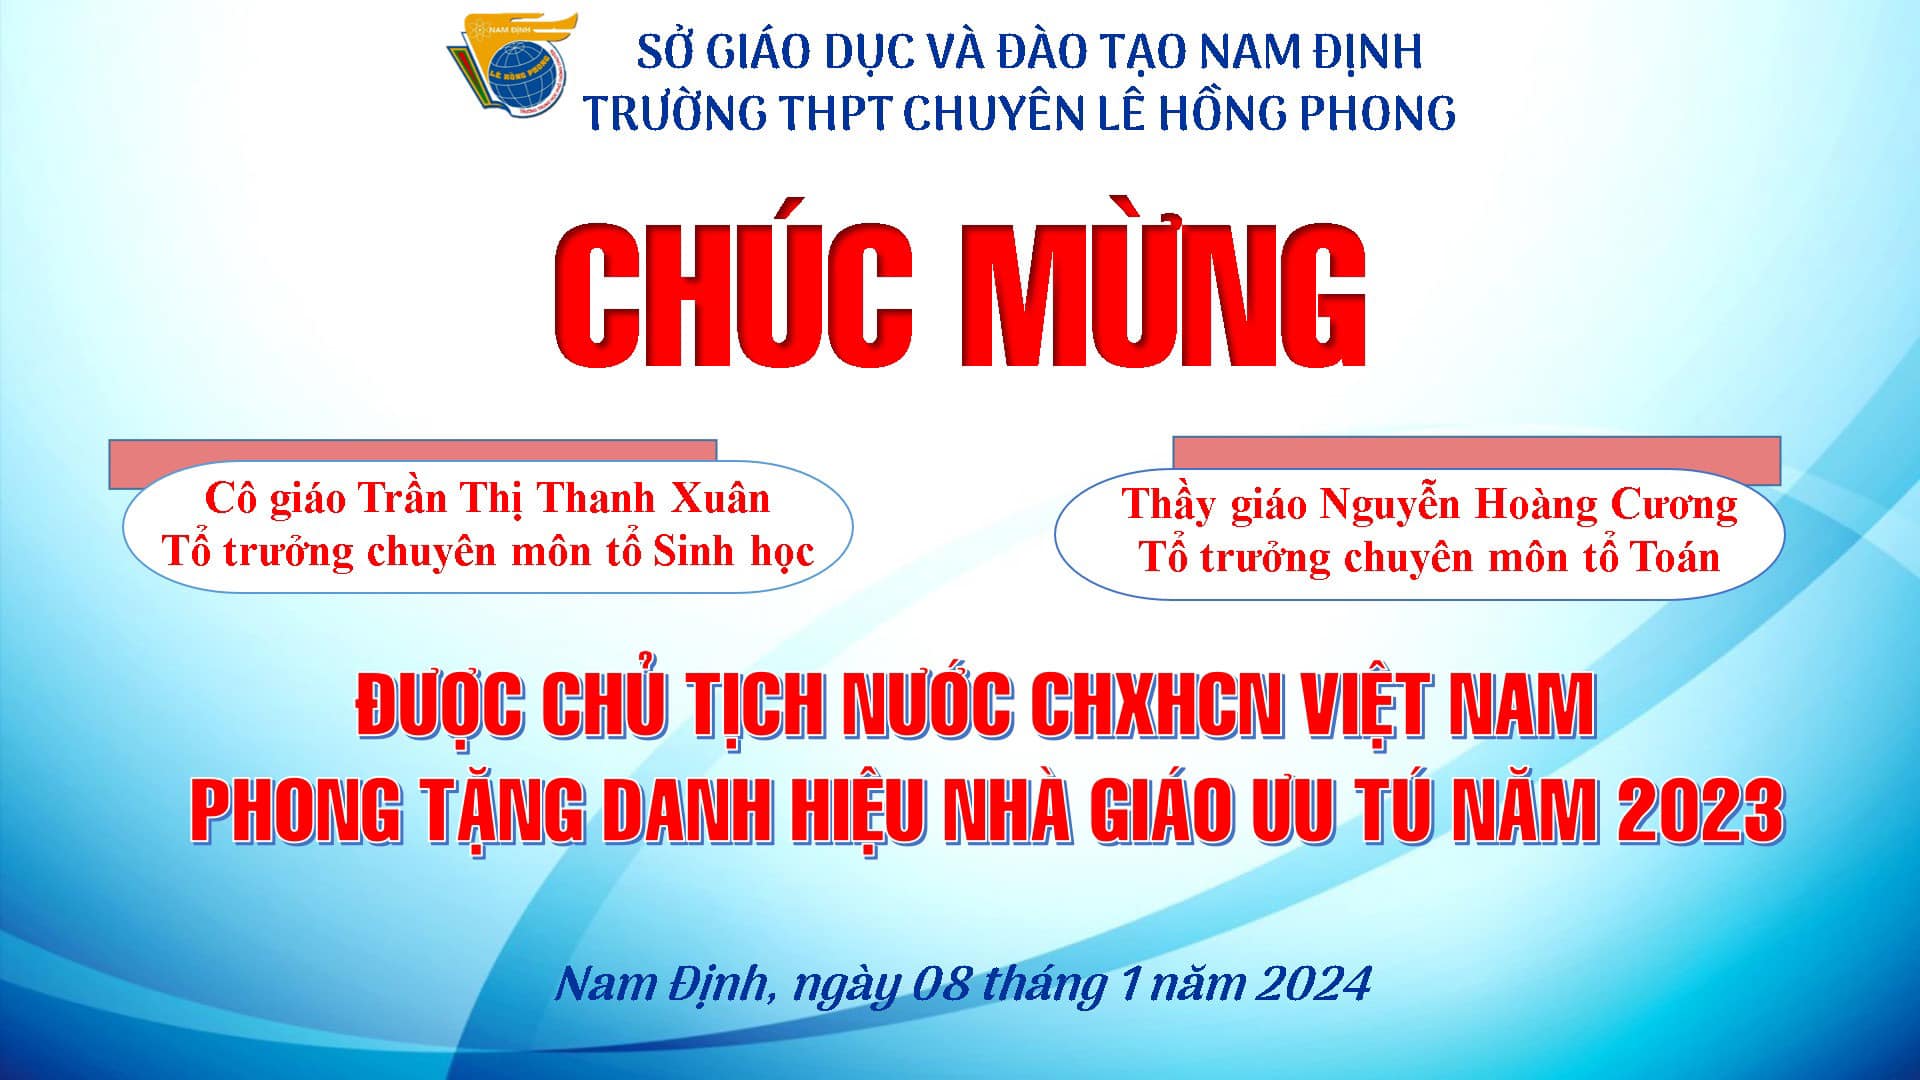 Trường THPT chuyên Lê Hồng Phong chúc mừng 02 thầy cô được phong tặng danh hiệu Nhà giáo Ưu tú 